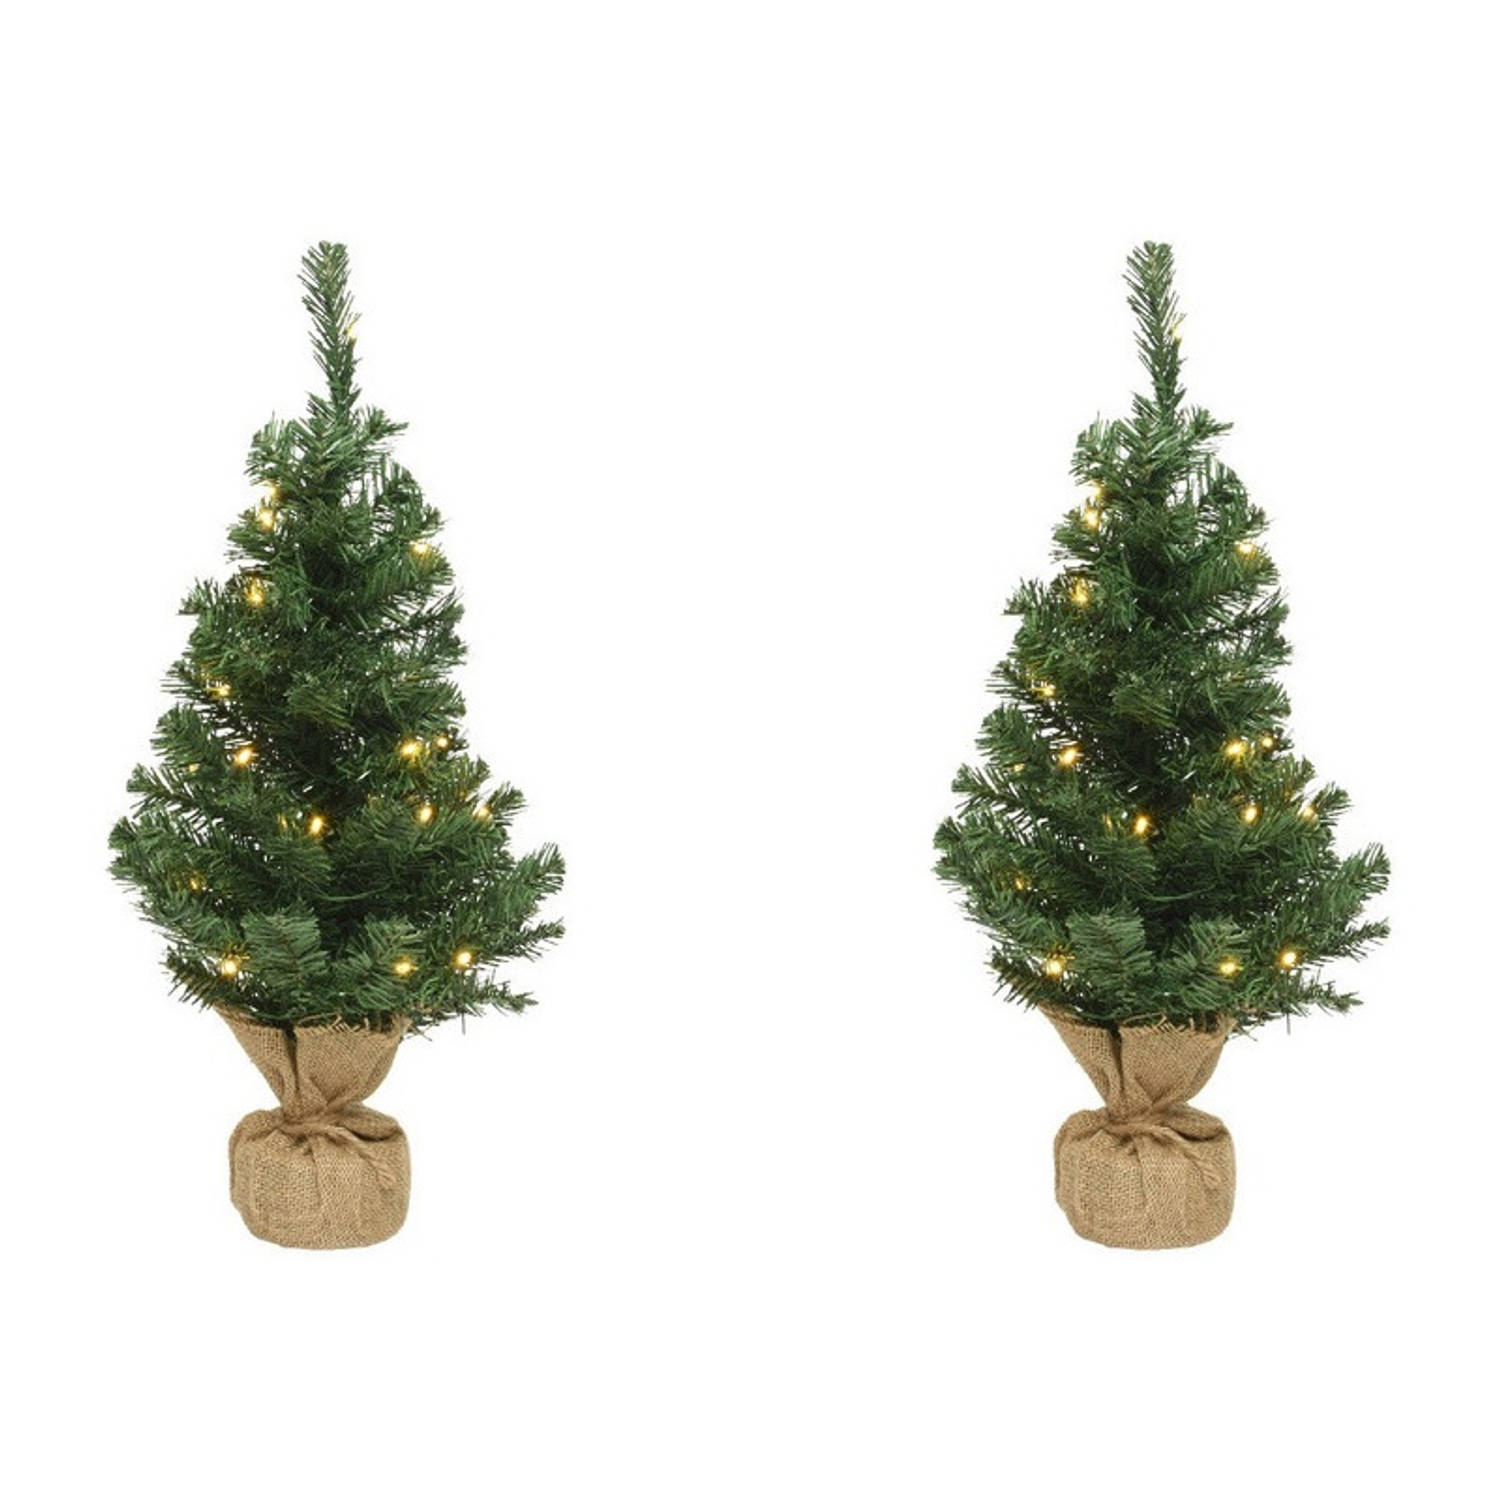 2x Kerst Kerstbomen Groen In Jute Zak Met Verlichting 45 Cm Kunstkerstboom